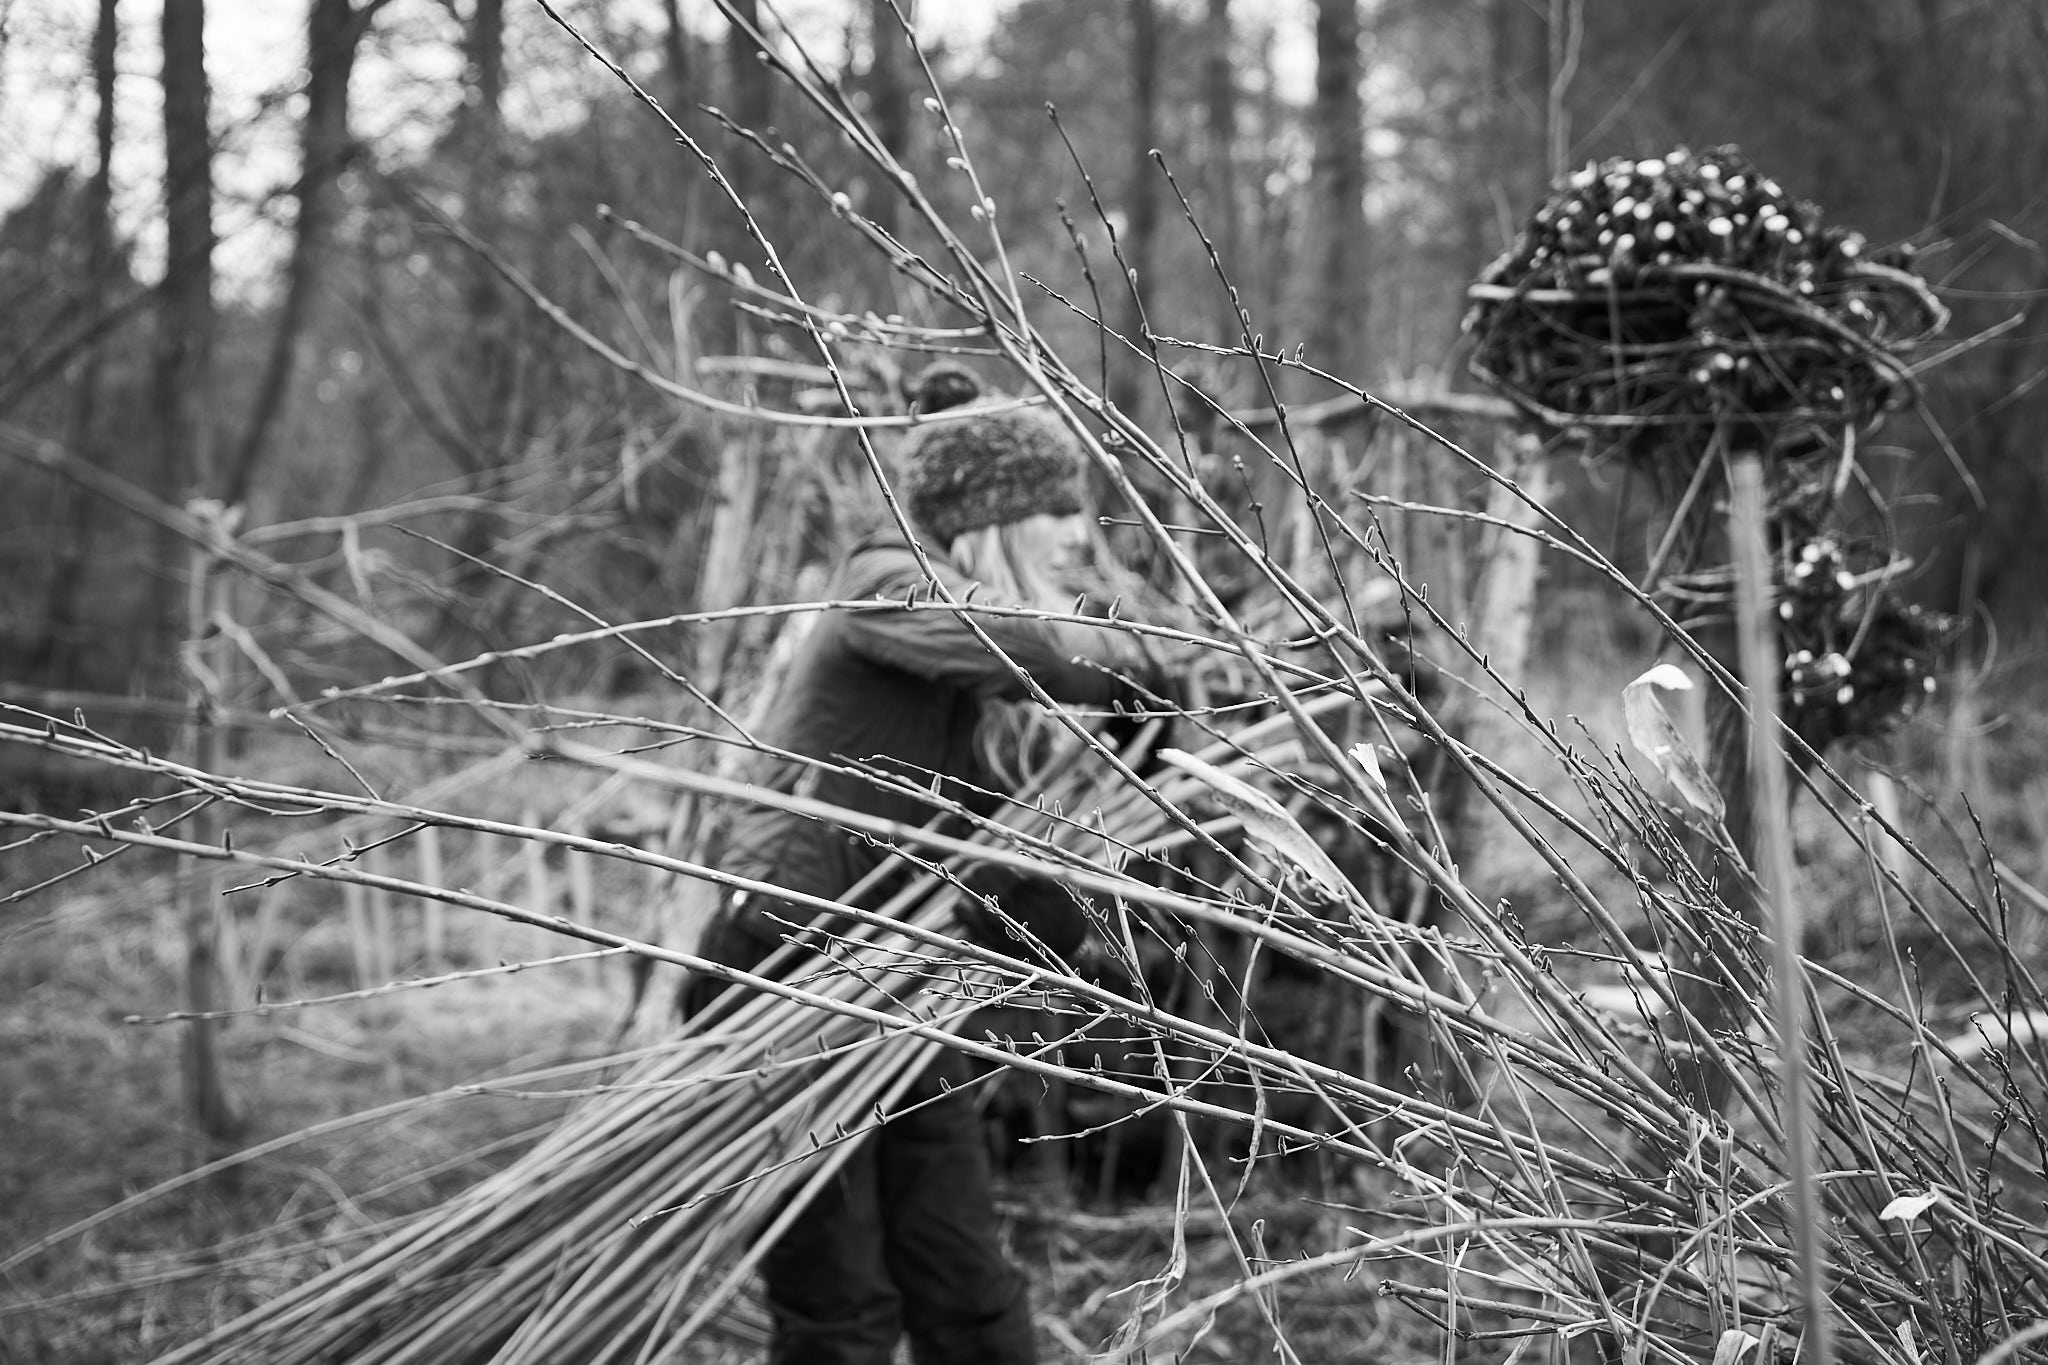 English basket maker cutting willow